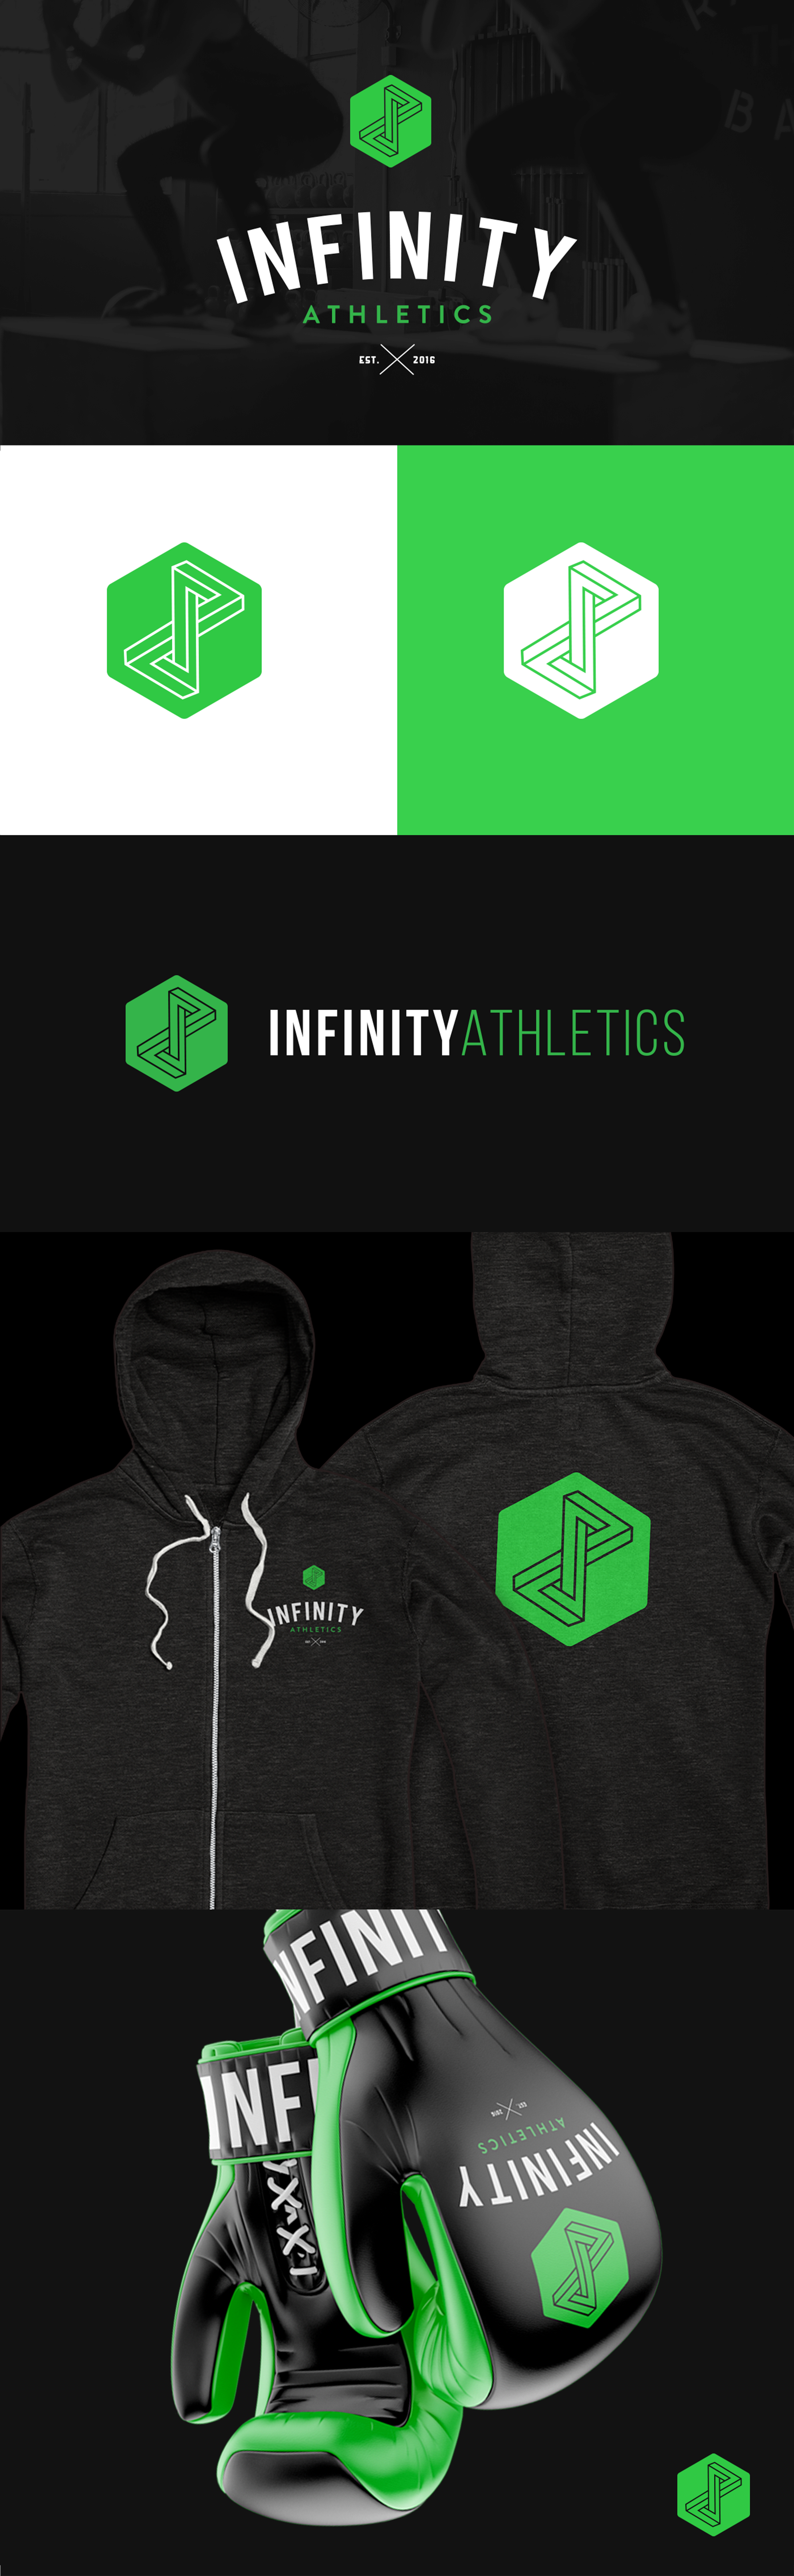 Infinity Athletics Branding